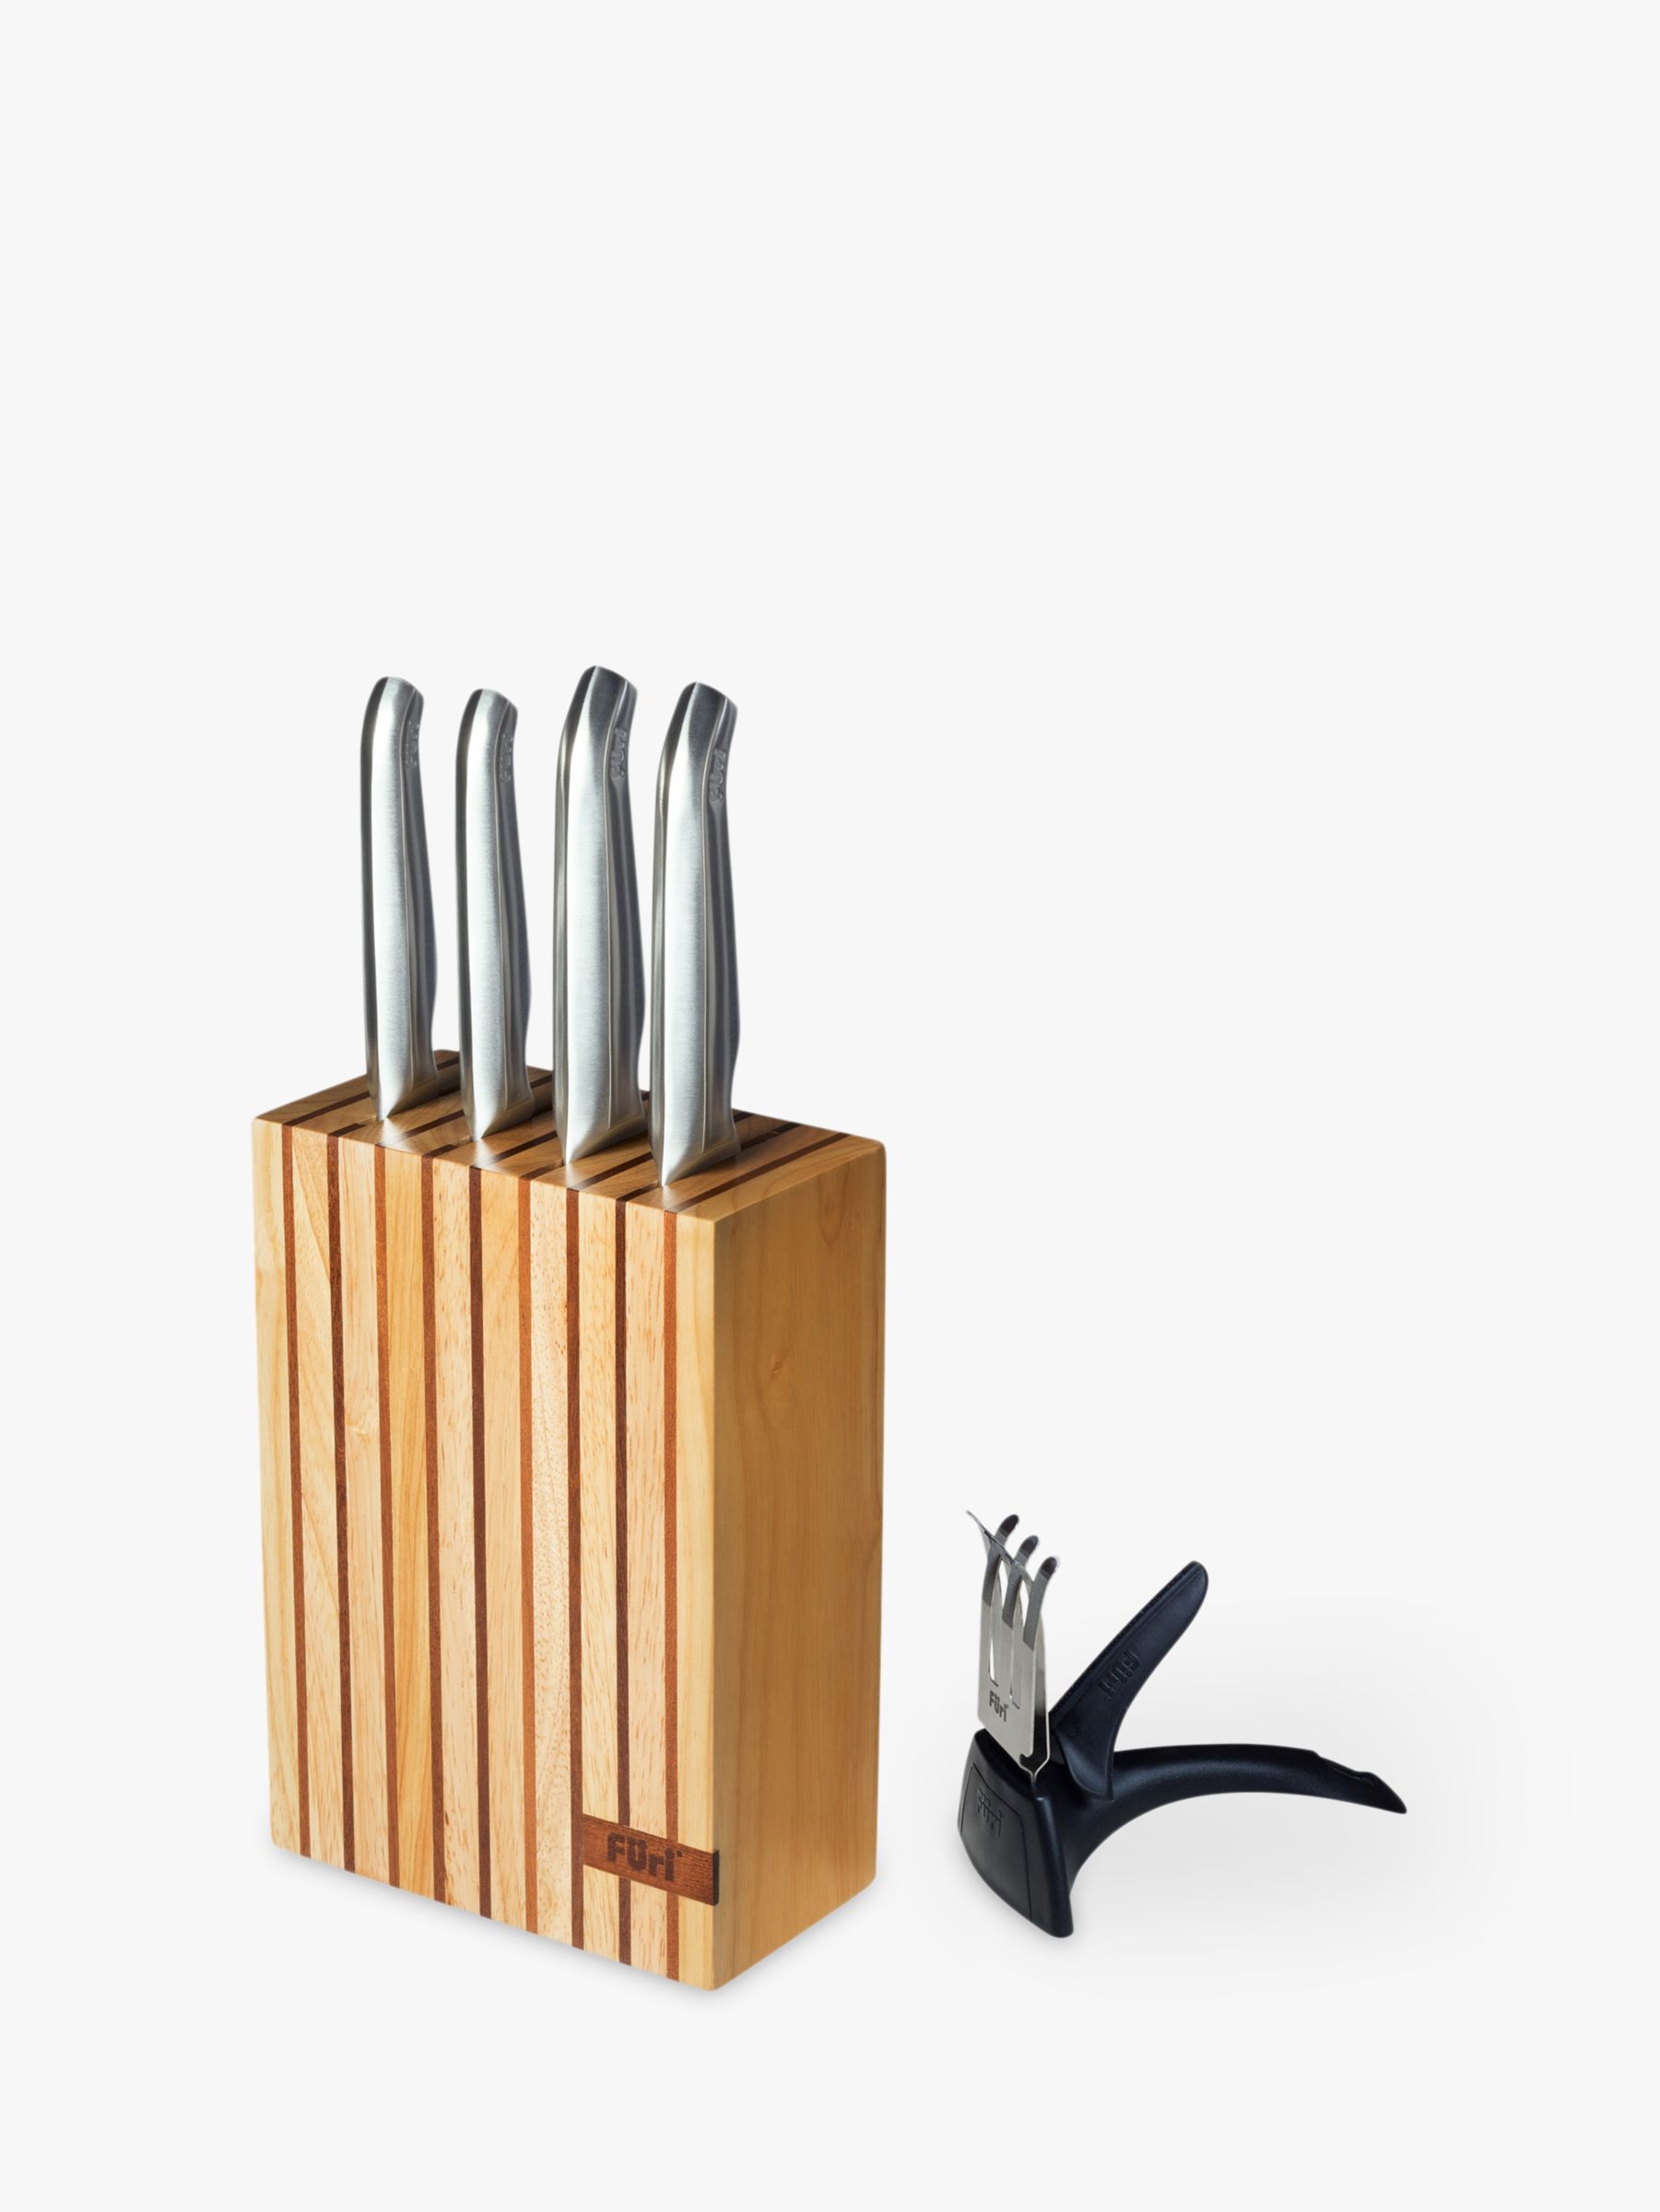 Embankment tilbehør buket Furi Pro Kitchen Knives and Wood Knife Block with Sharpener, 6 Piece